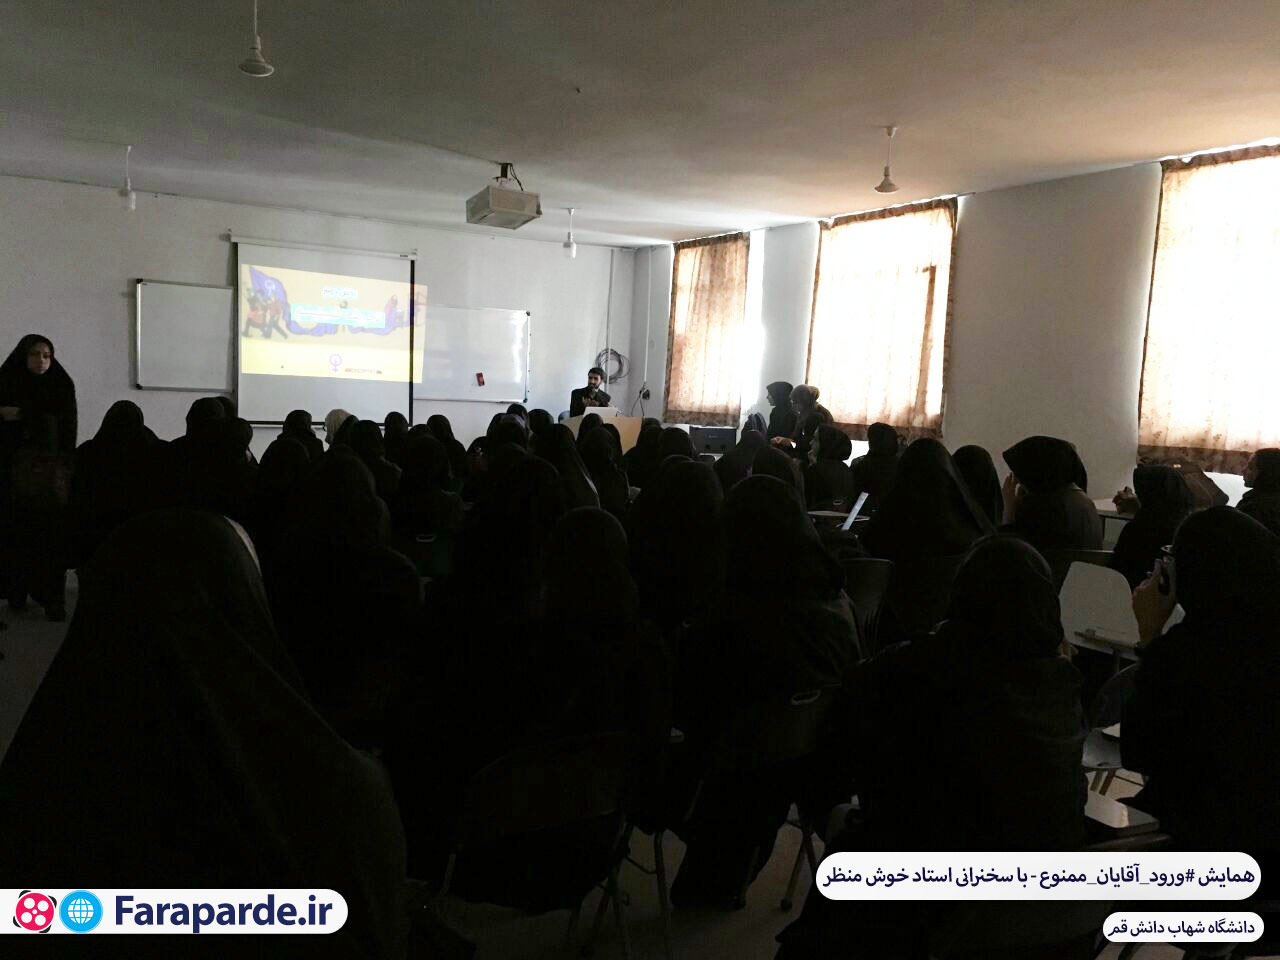 سخنرانی استاد خوش منظر در دانشگاه شهاب دانش